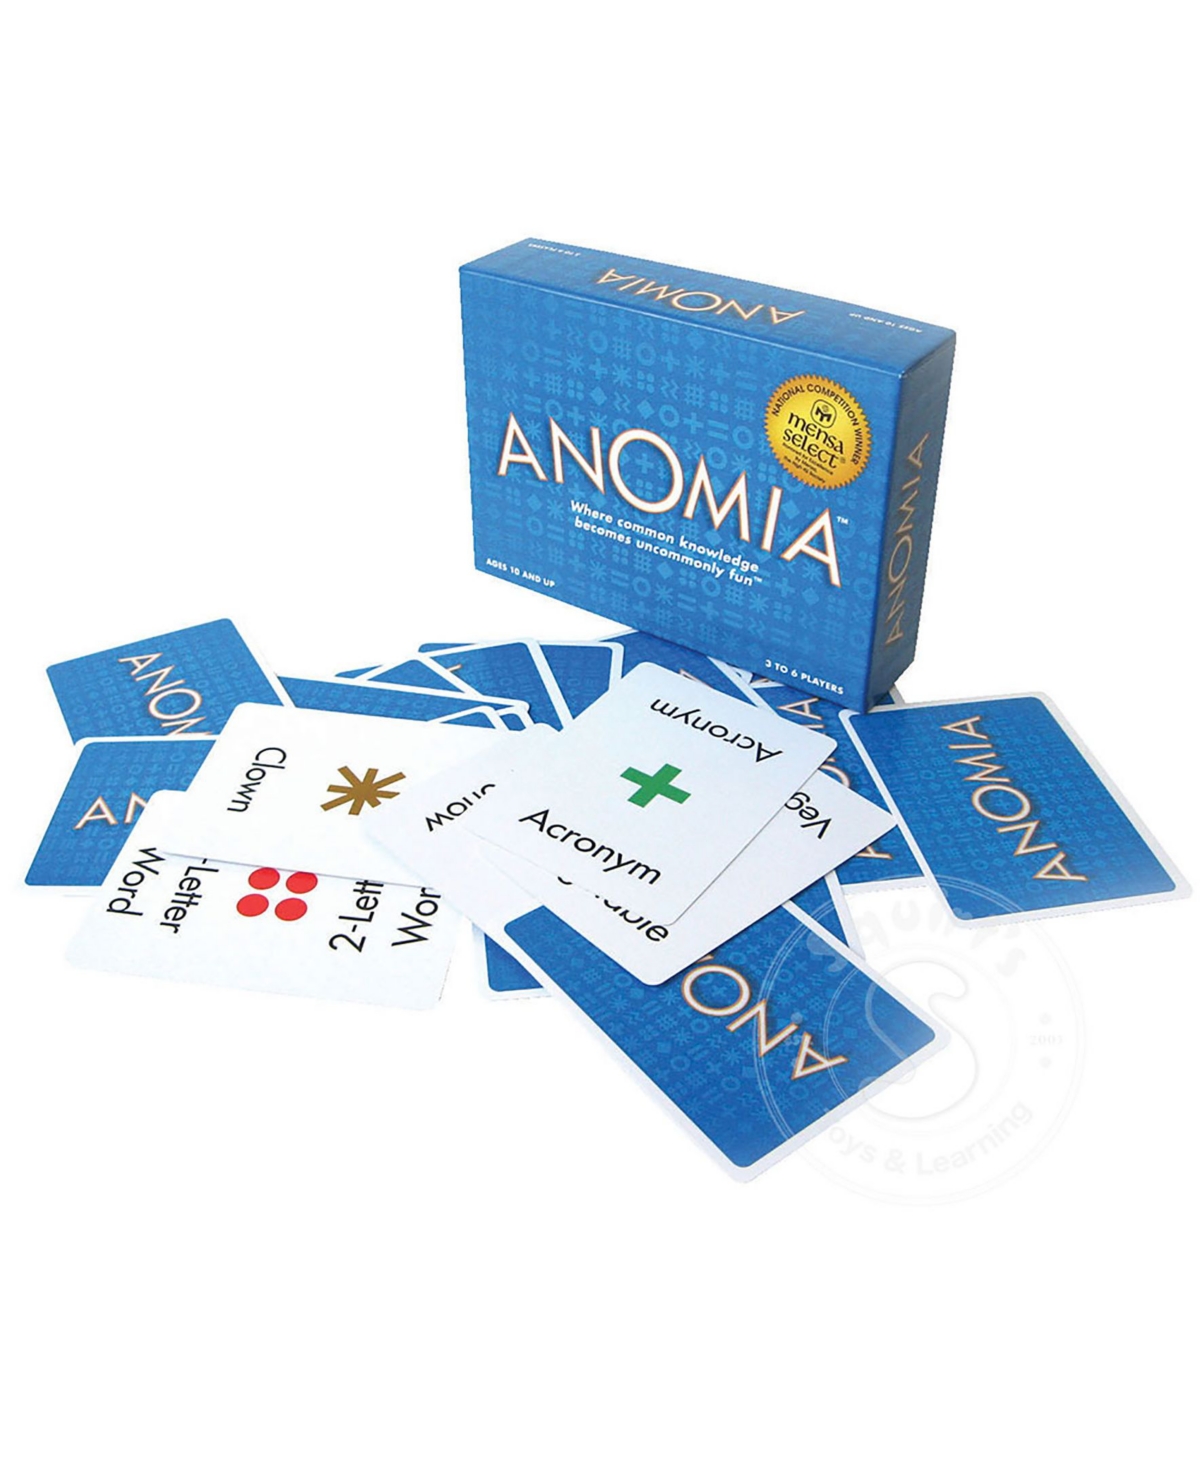 Shop Anomia Press Anomia In Blue